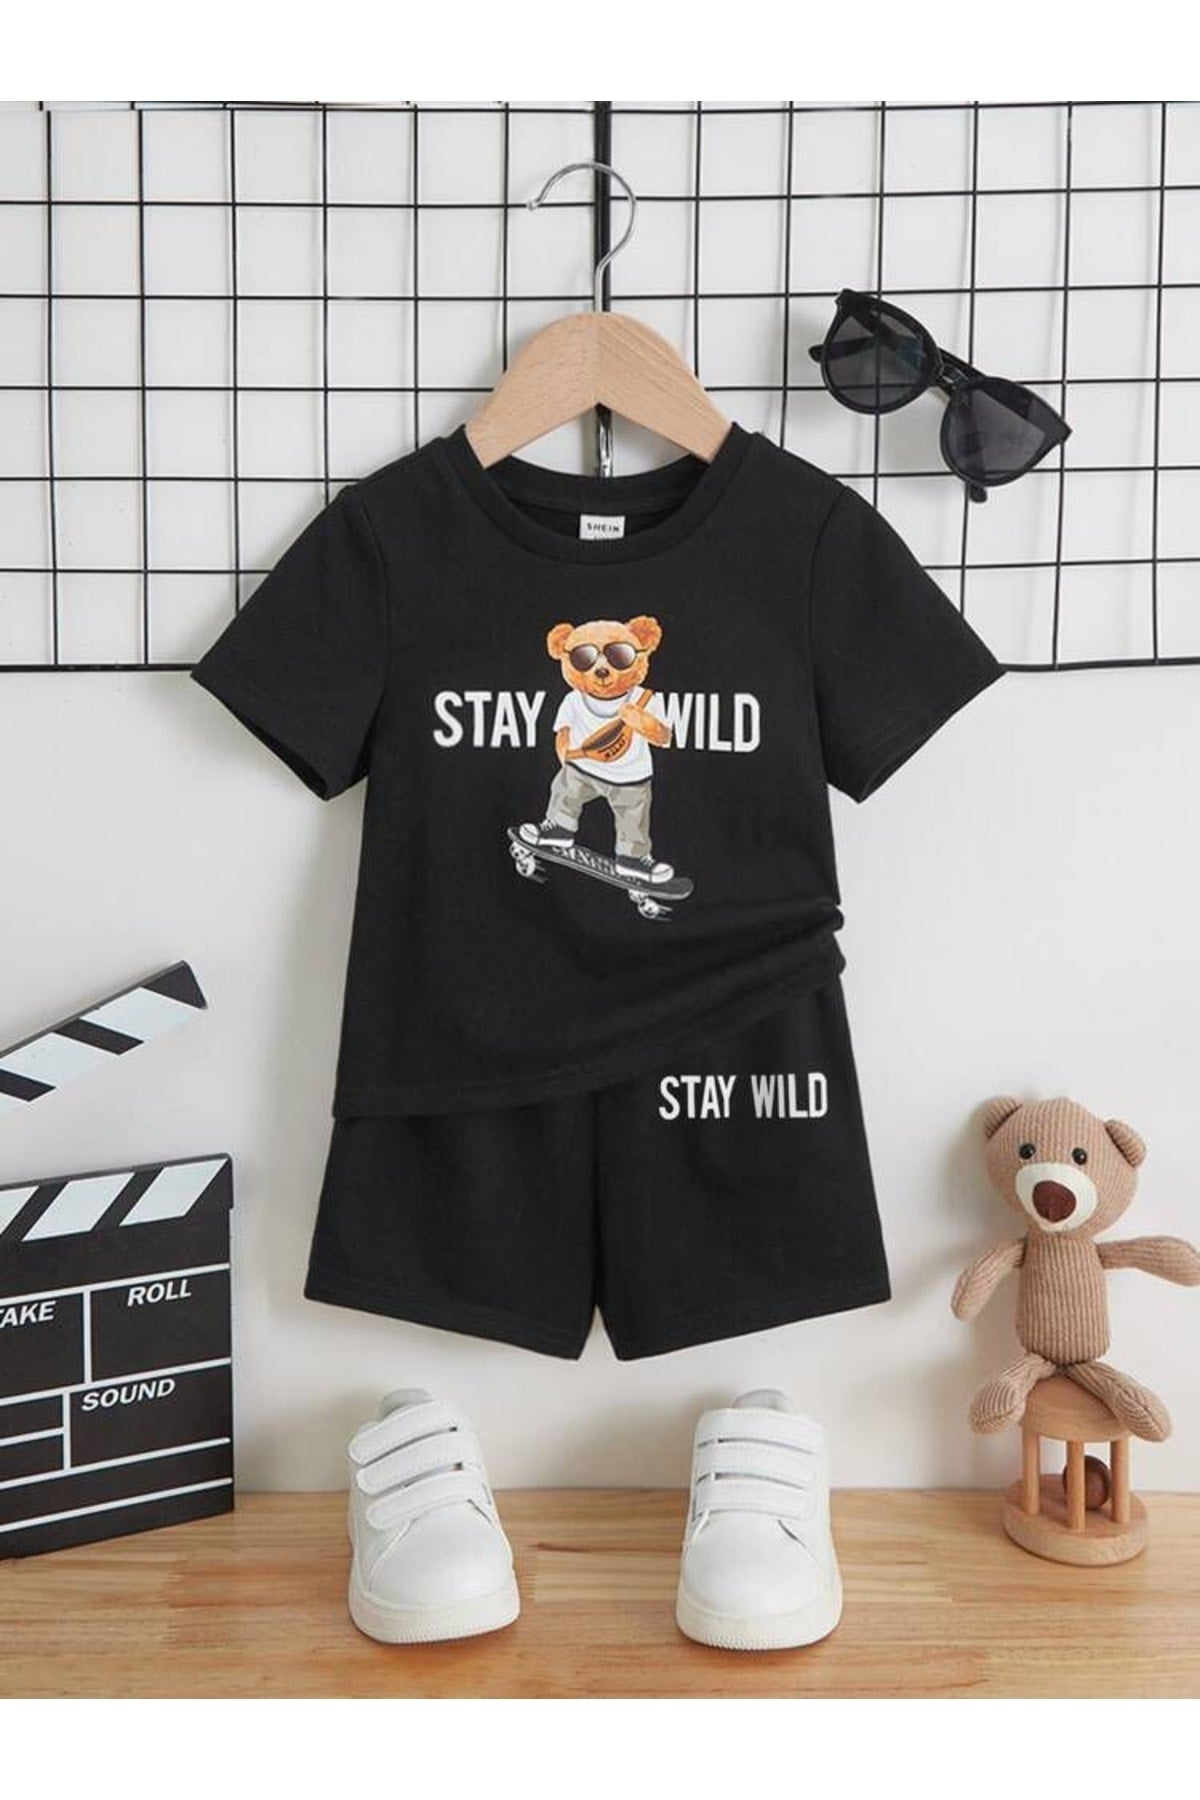 Stay Wild Girls / Boys Shorts Set